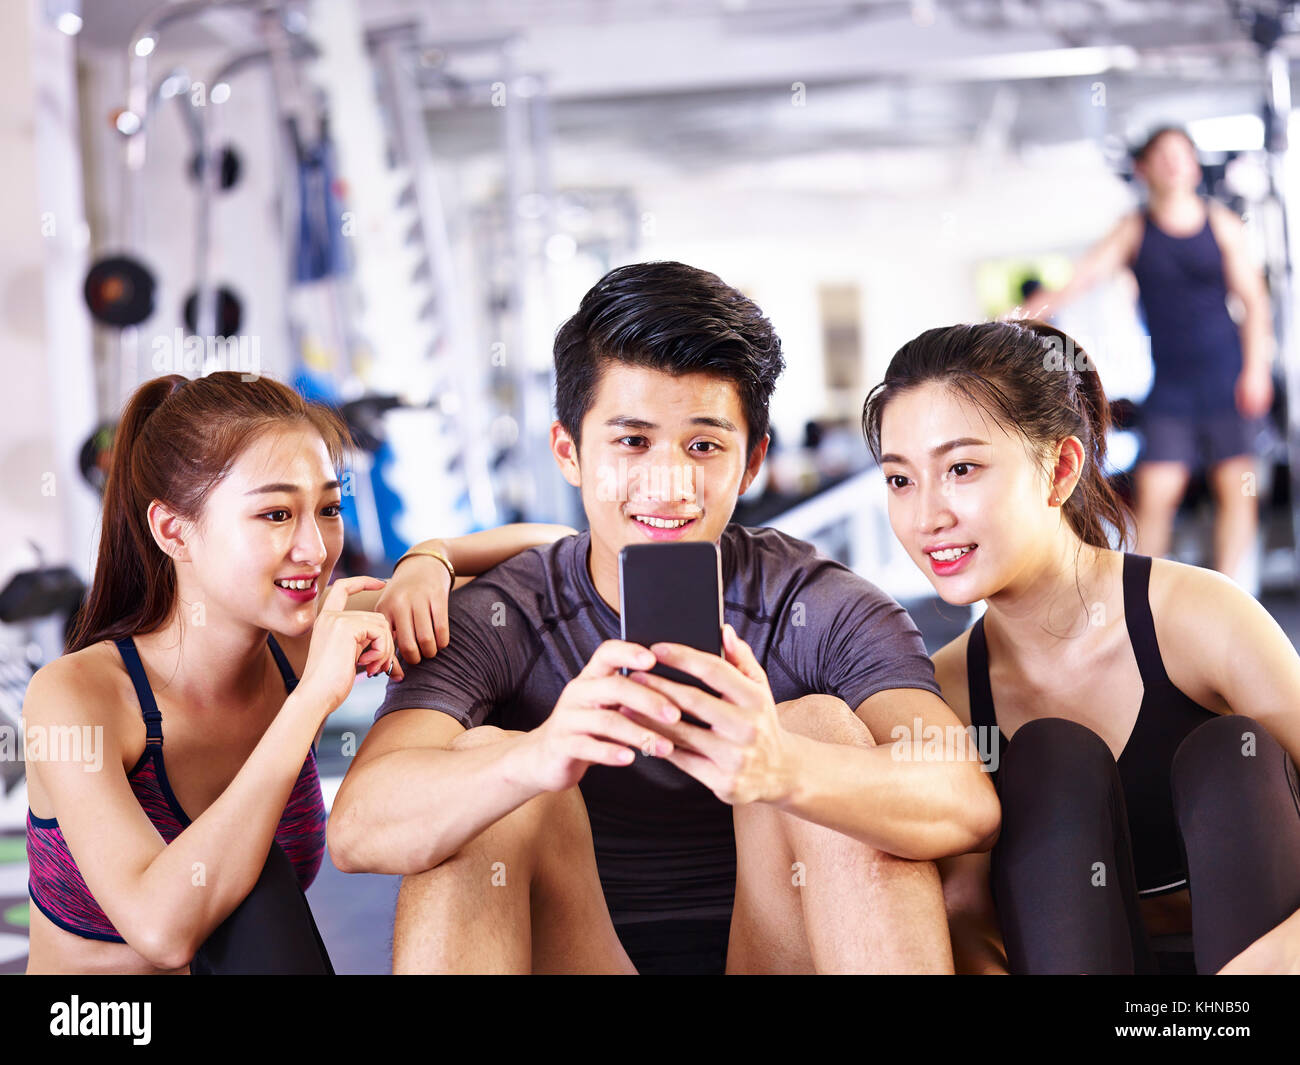 Young Asian man et les femmes à l'aide de téléphone mobile dans une salle de sport tout en faisant une pause au cours de l'exercice. Banque D'Images